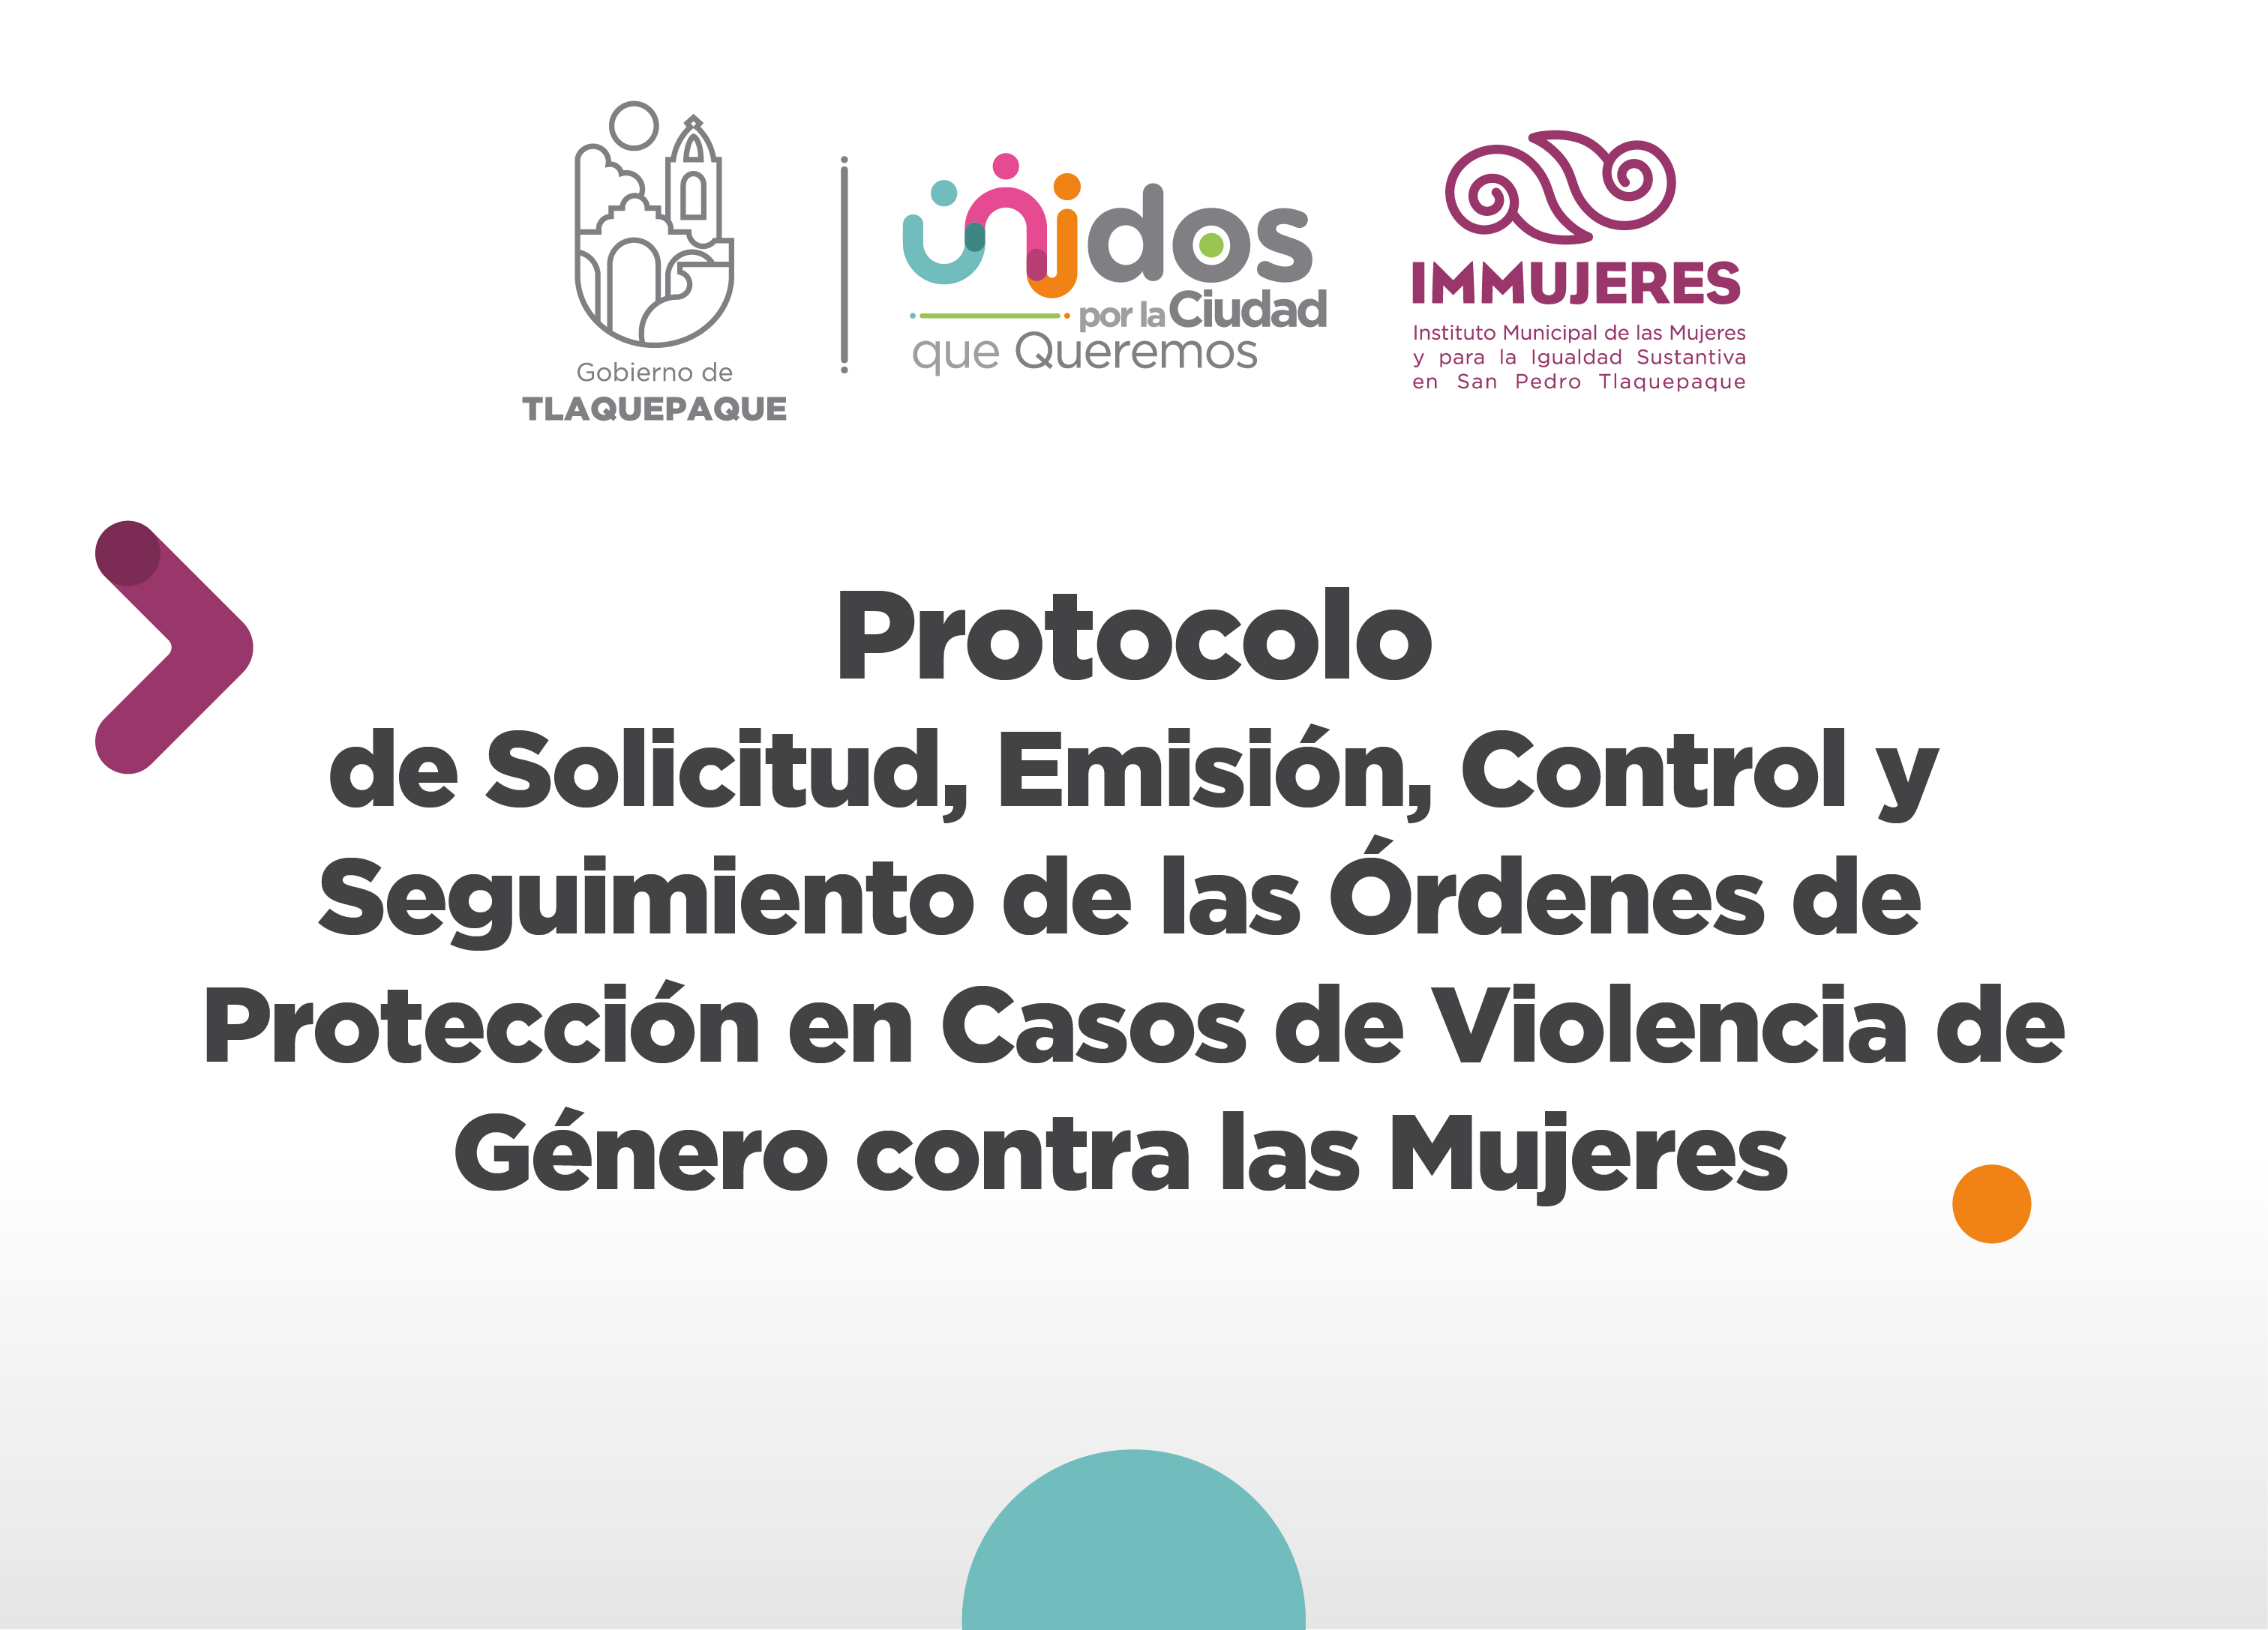 Protocolo de Solicitud, Emisión, Control y Seguimiento de las órdenes de Protección en Casos de Violencia de Género contra las Mujeres